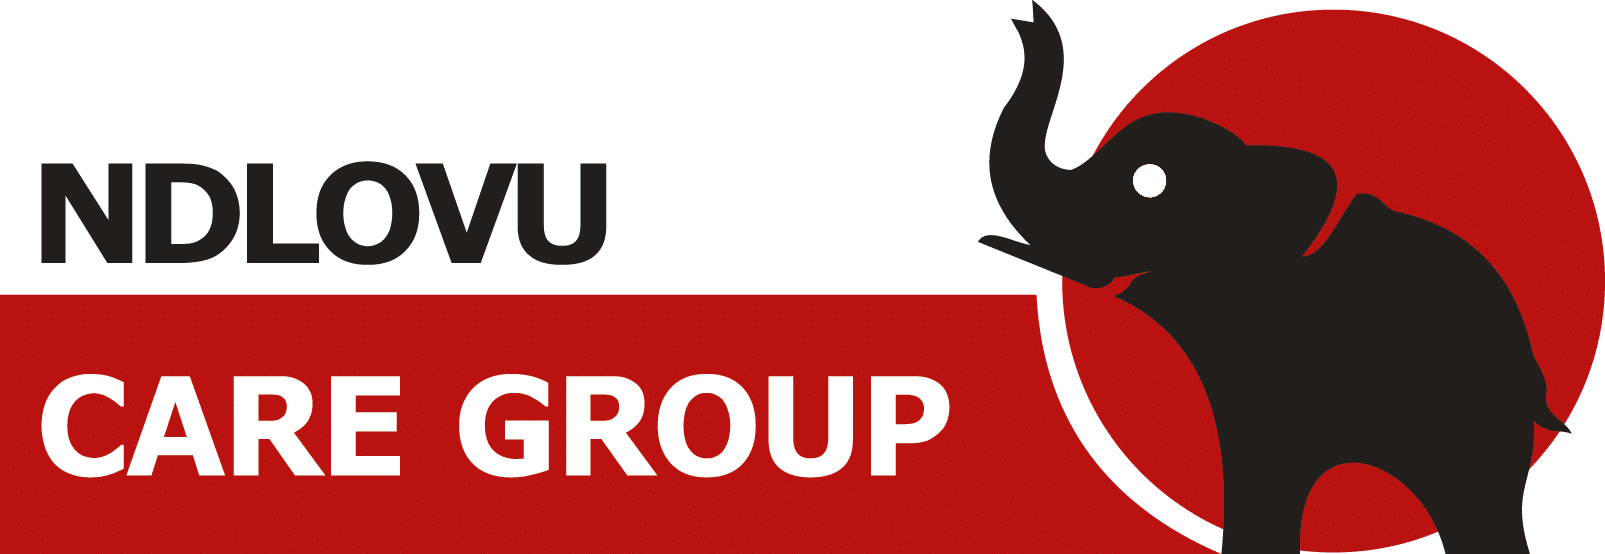 Logo for Ndlovu Care Group